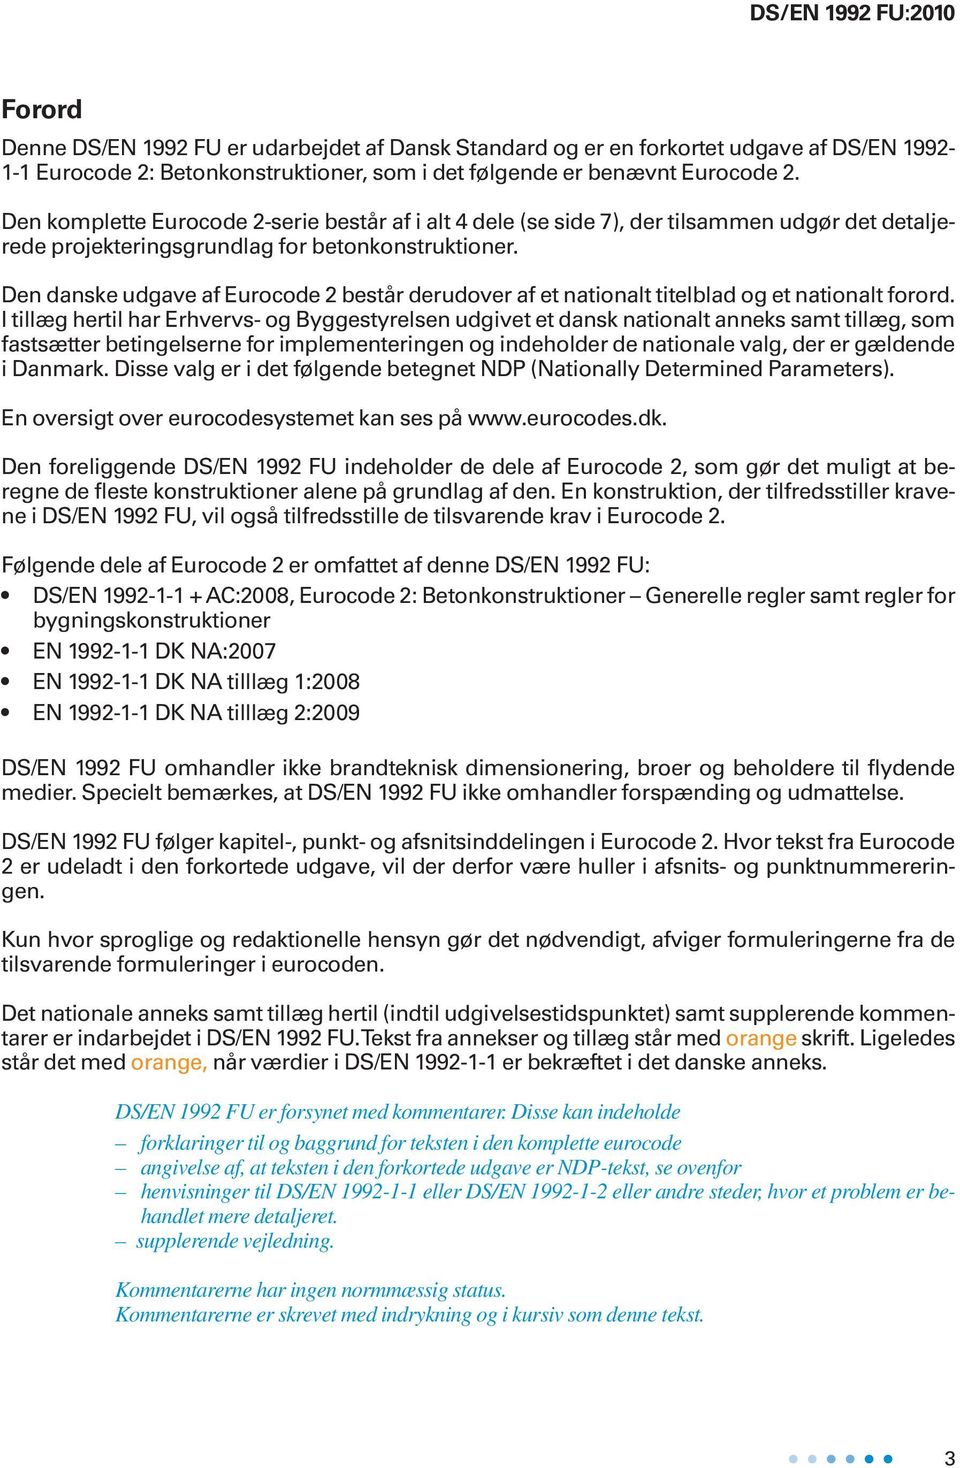 Den danske udgave af Eurocode 2 består derudover af et nationalt titelblad og et nationalt forord.